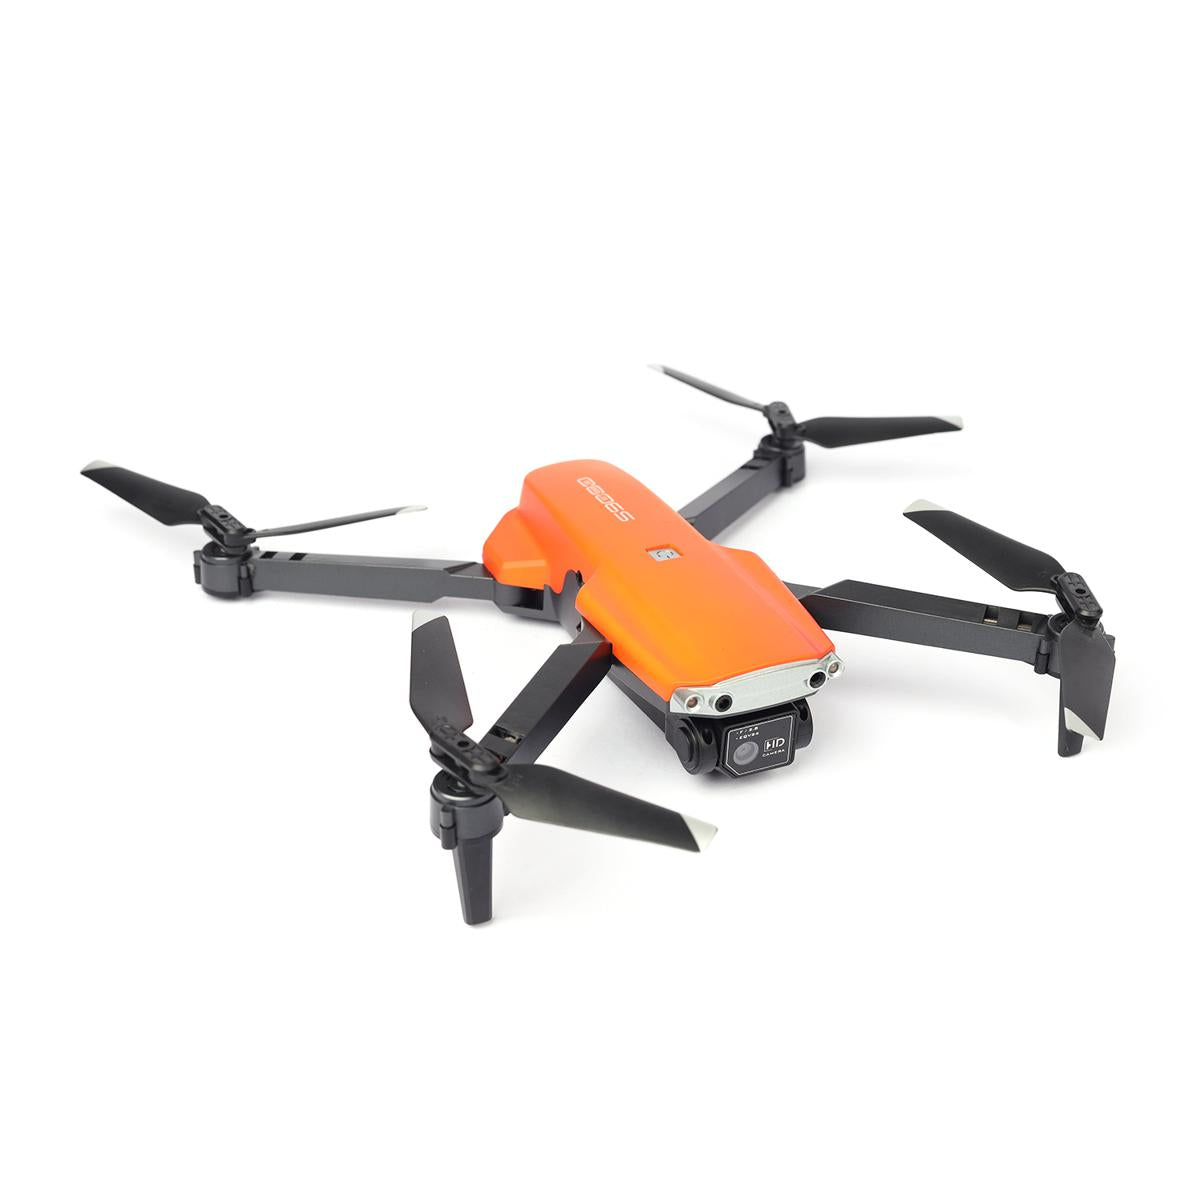 Optical Flow Position Drone S9000 - Orange